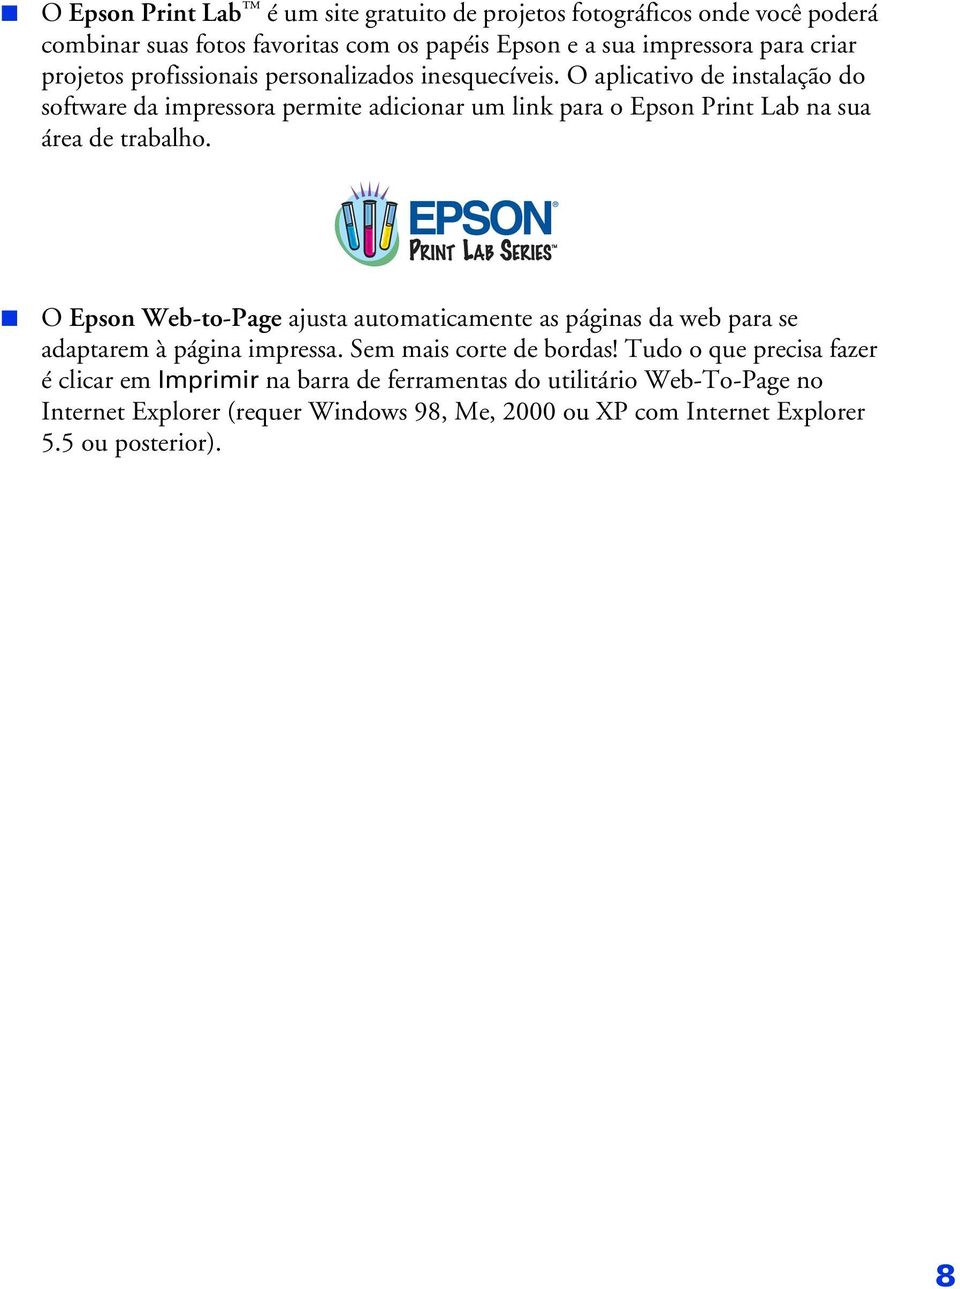 O aplicativo de instalação do software da impressora permite adicionar um link para o Epson Print Lab na sua área de trabalho.